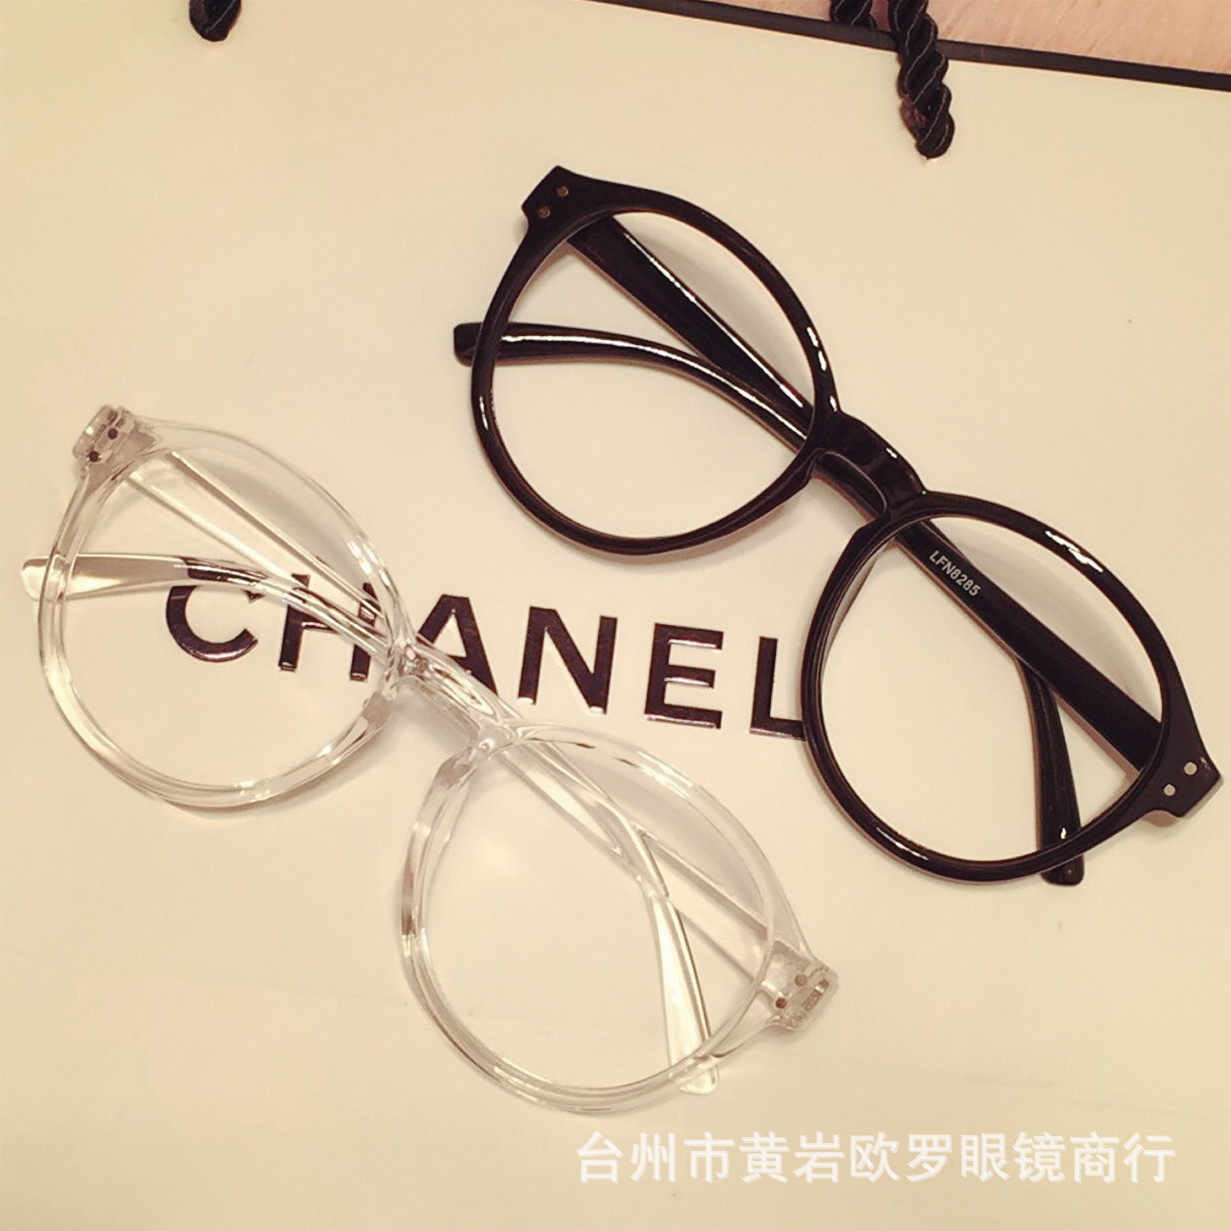 2016新款潮流时尚米钉眼镜框 圆框透明框 眼镜架超轻文艺眼镜8285